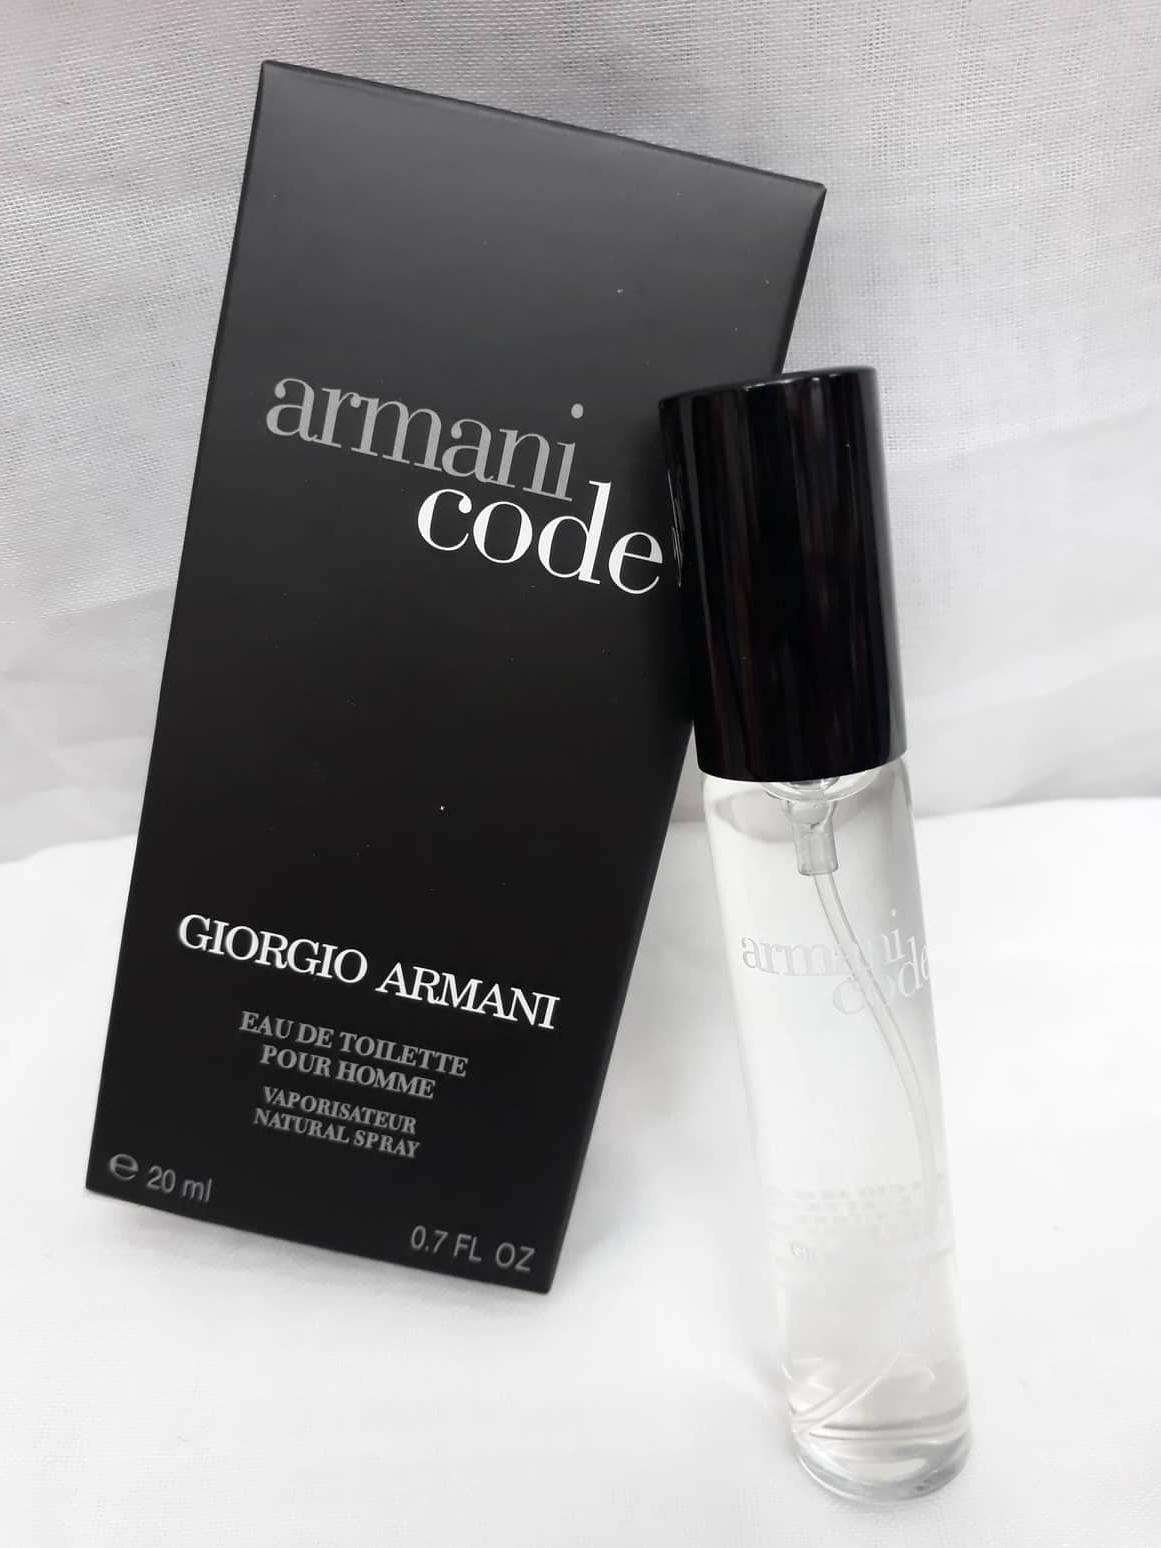 armani code giorgio armani review